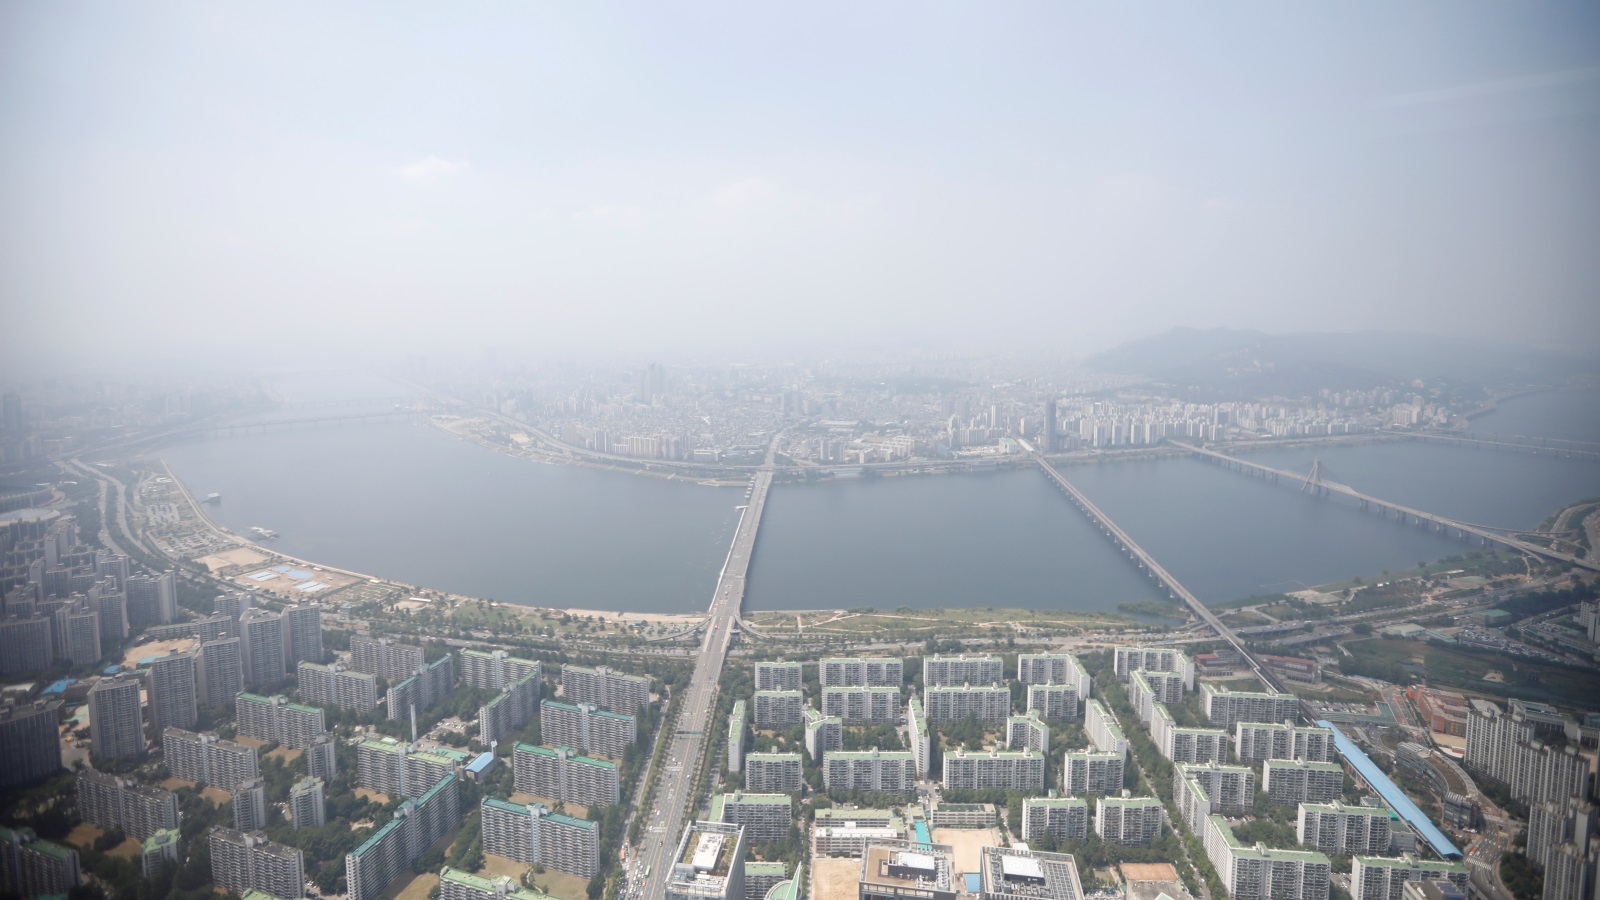 تمثل سول أهمية كبيرة لكوريا الجنوبية، إذ إن أكثر من نصف سكان كوريا الجنوبية البالغ عددهم 50 مليونا يعيشون فيها، كما أن 70% من اقتصاد البلاد معقود على المدينة